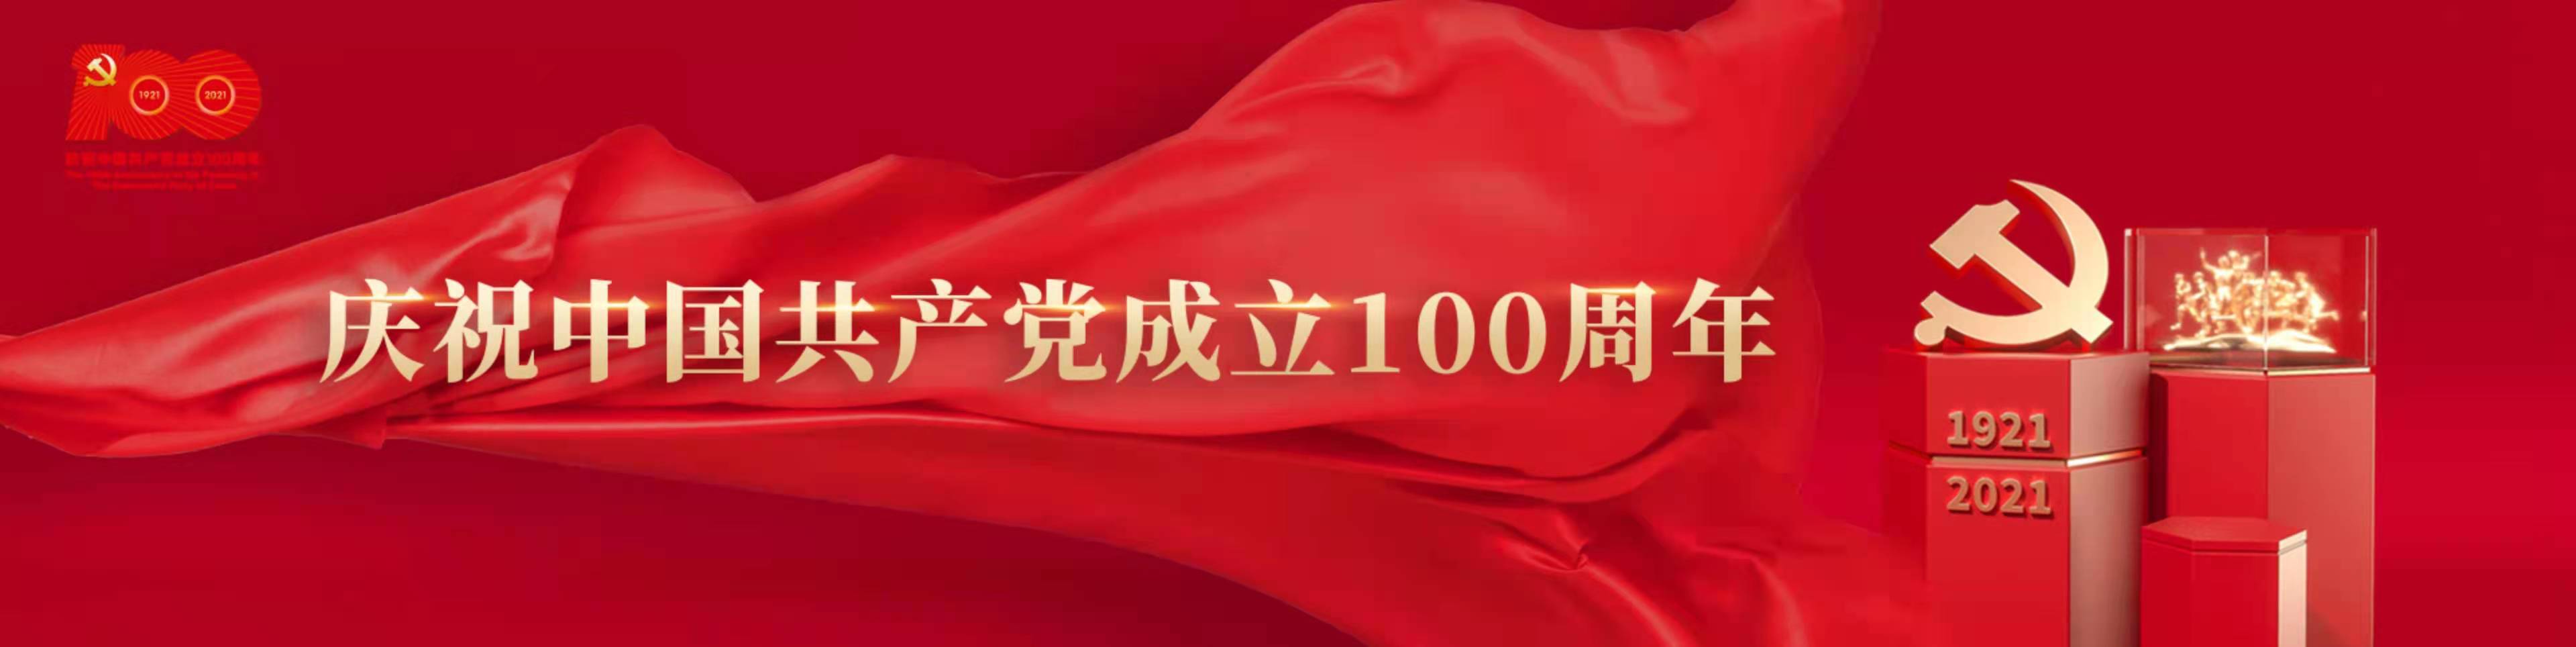 通用环球西安北环医院 庆祝中国共产党成立100周年